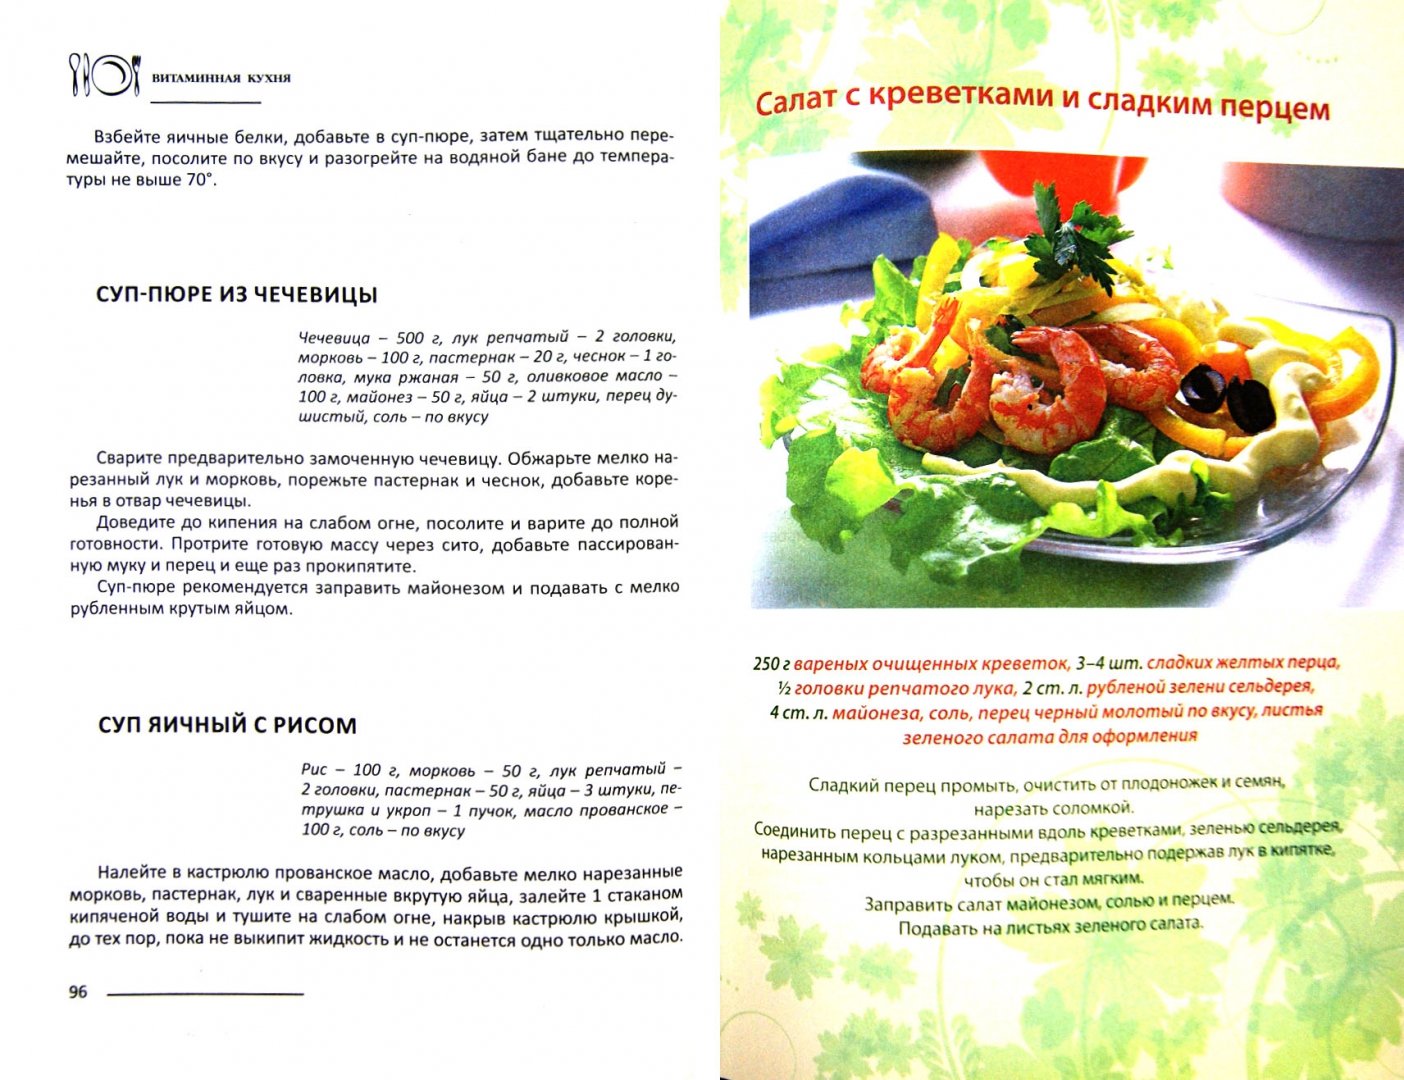 Иллюстрация 1 из 7 для Витаминная кухня - Л. Николаев | Лабиринт - книги. Источник: Лабиринт